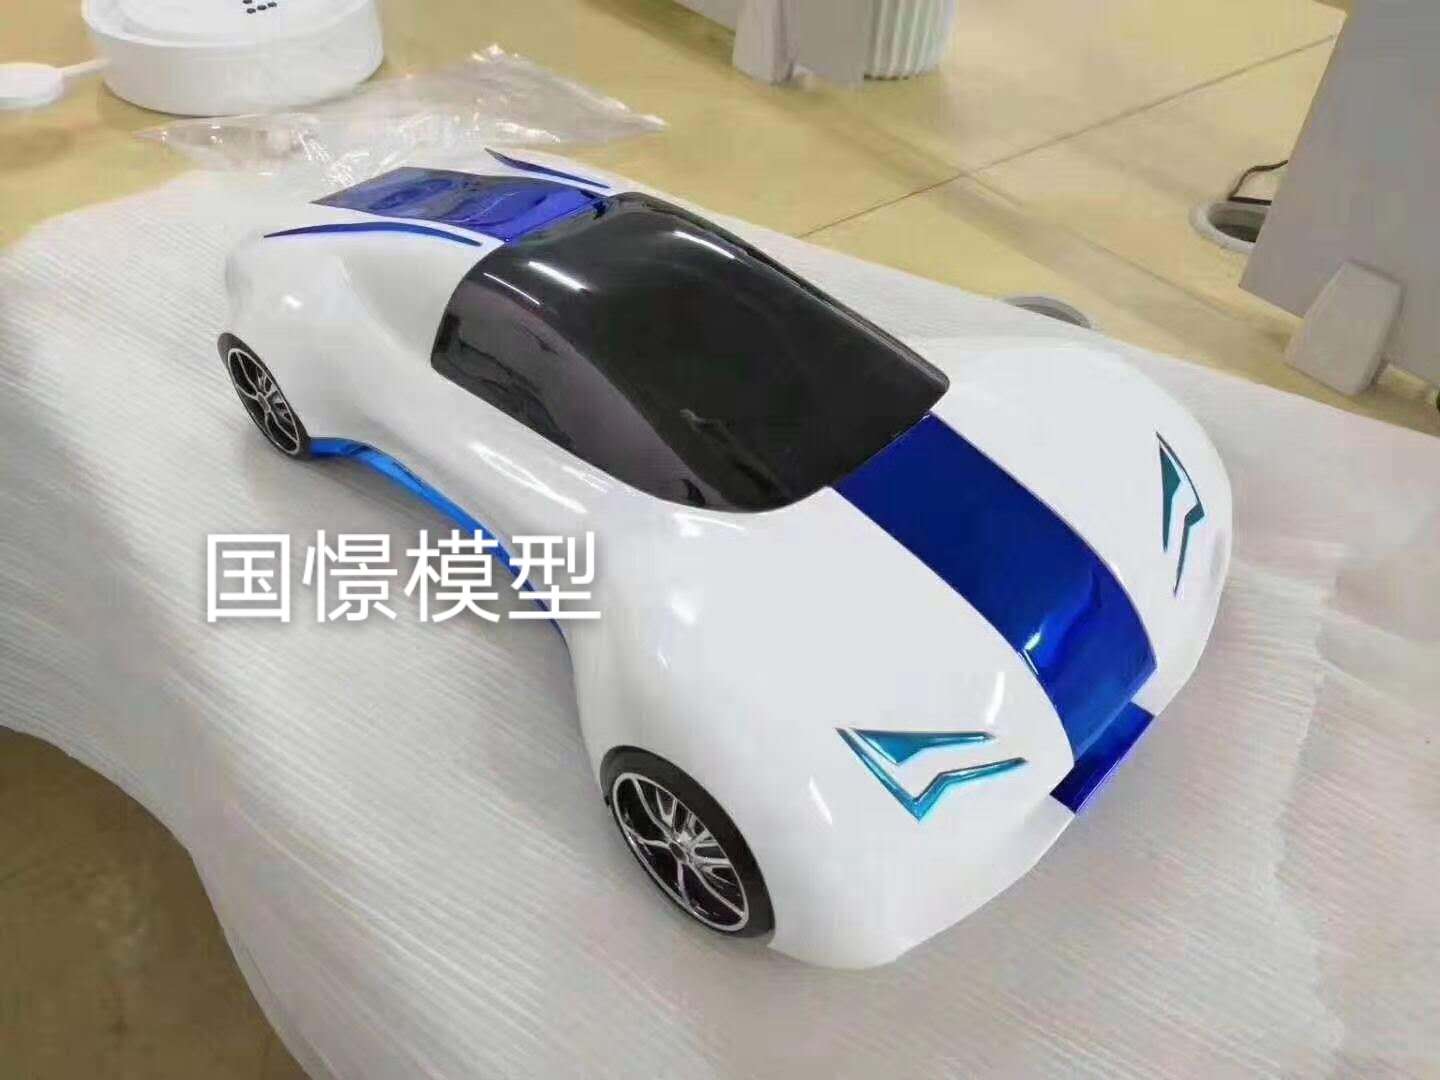 武乡县车辆模型